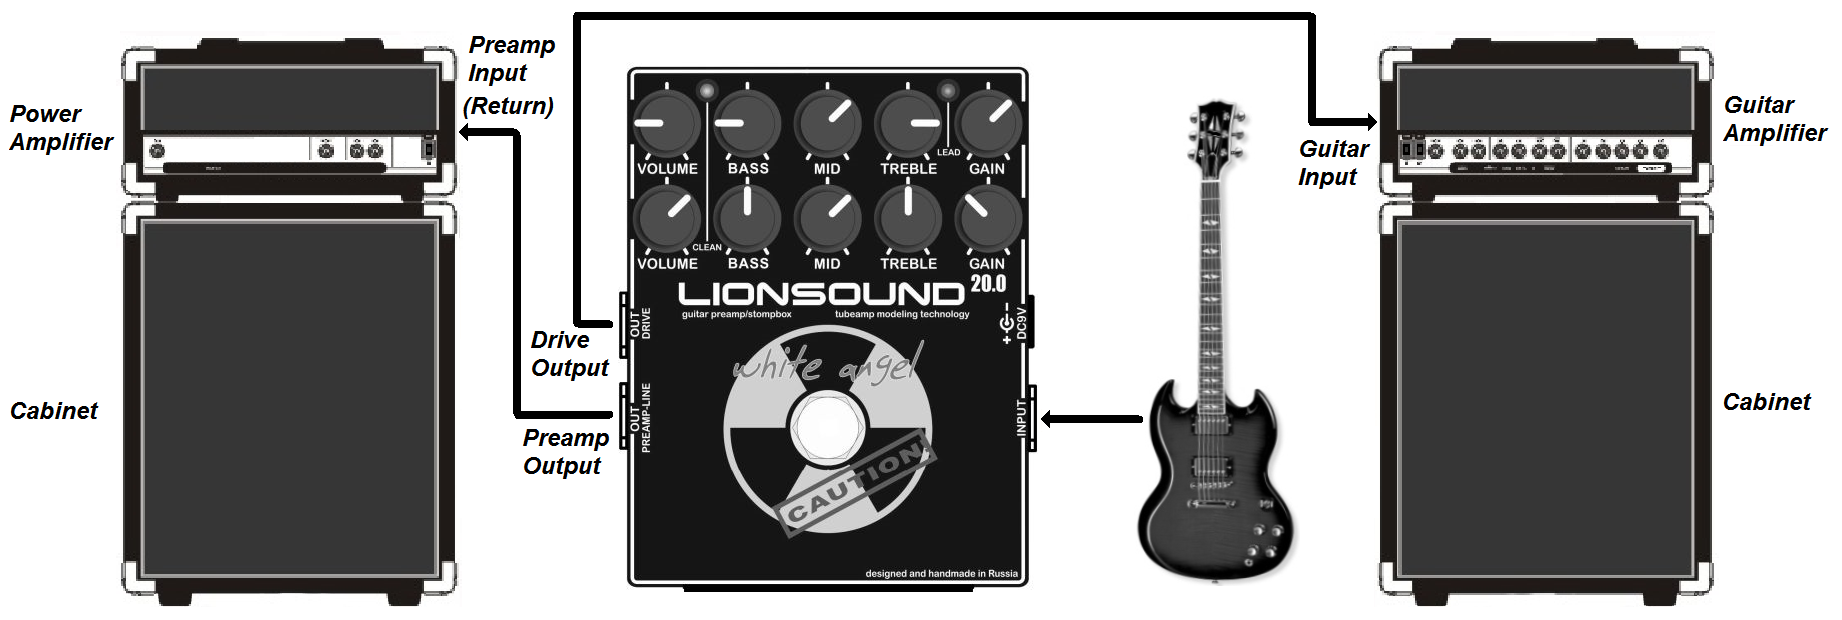 Lionsound 20.0